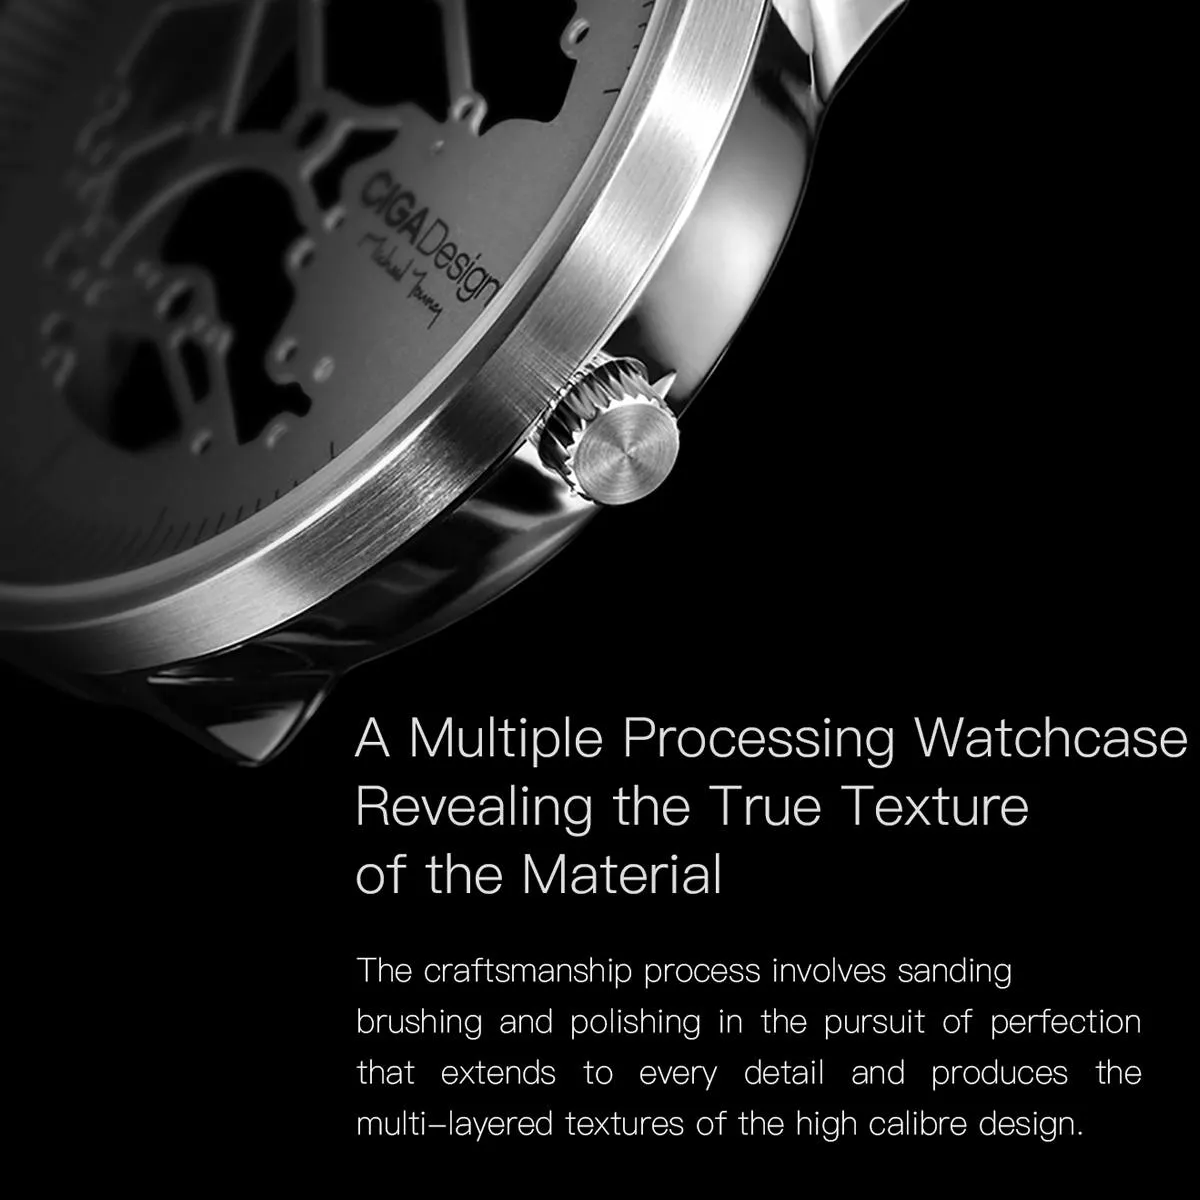 CIGA Design CIGA Watch Mechanical Watch MY Series Automatic Hollow Mechanical Watch Men's FASION Wa-tch from xiaomiyoupin248H